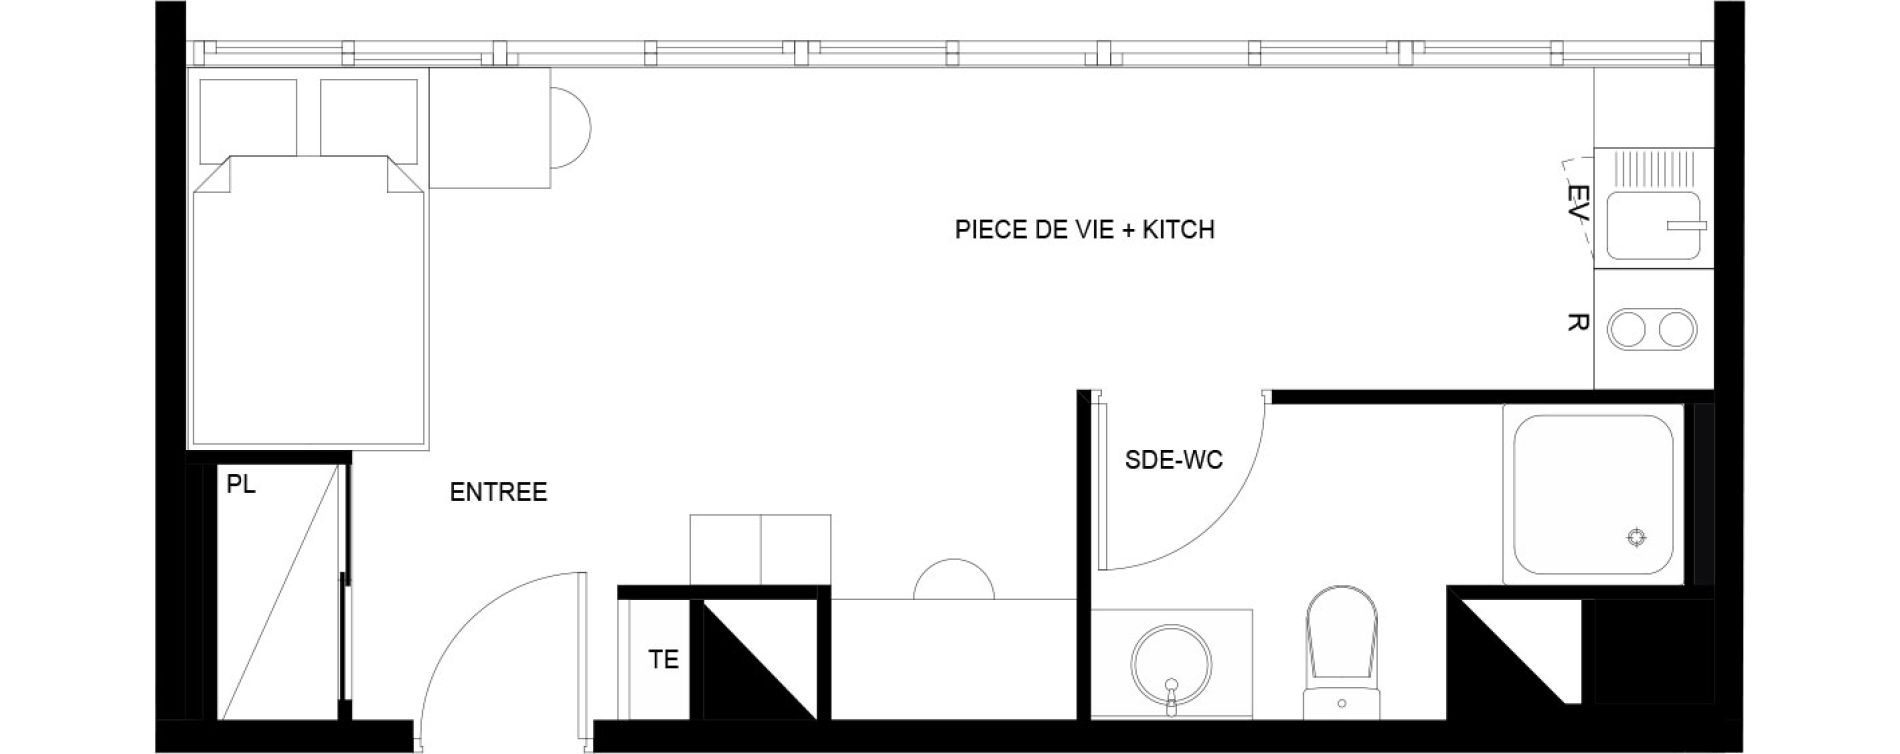 Appartement T1 meubl&eacute; de 23,08 m2 au Mans Nationale